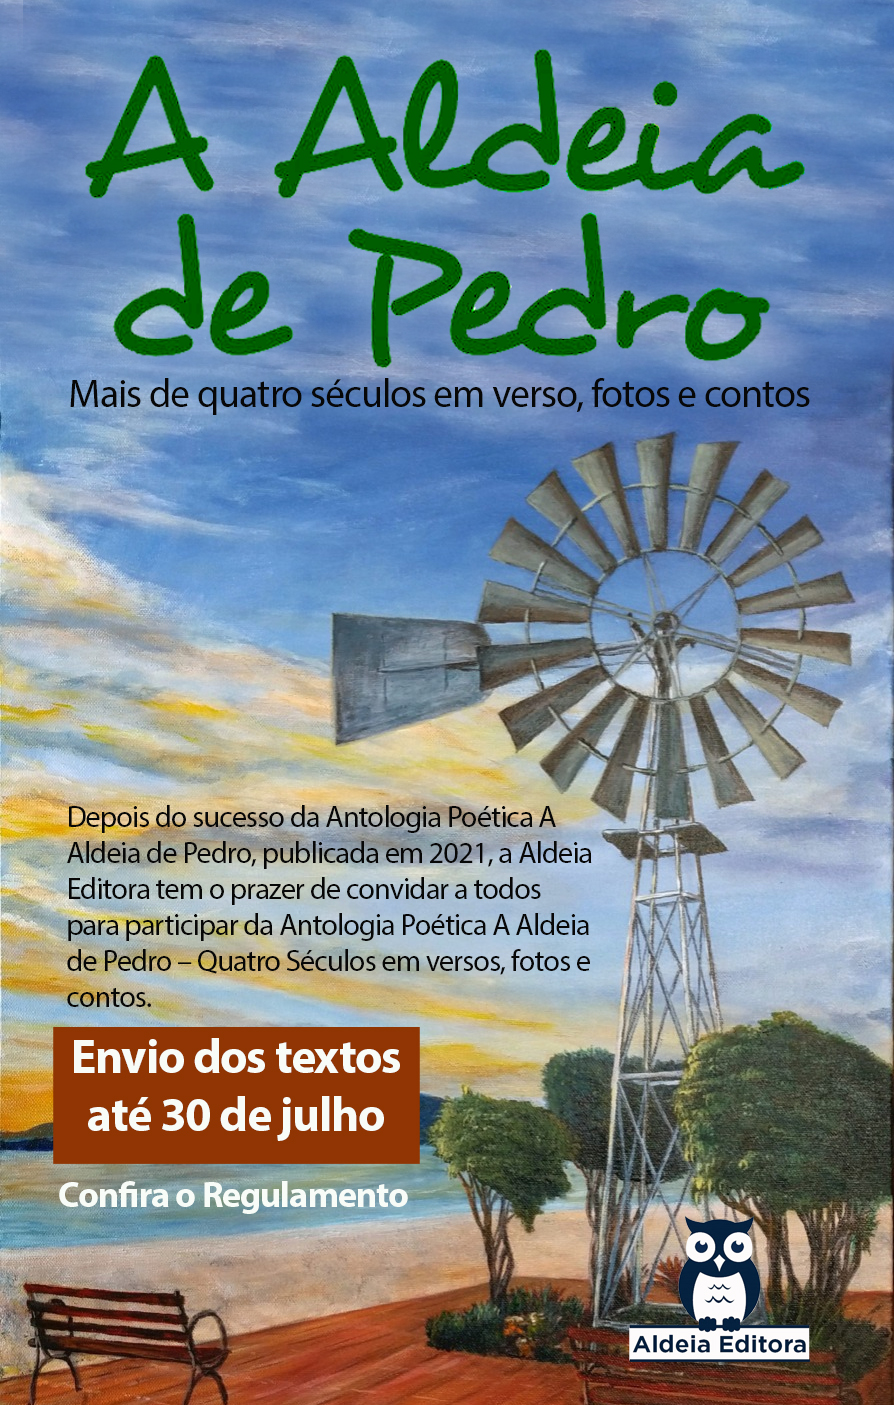 Aldeia Editora prorroga edital do “Aldeia de Pedro – Mais de quatro séculos em verso, fotos e contos”